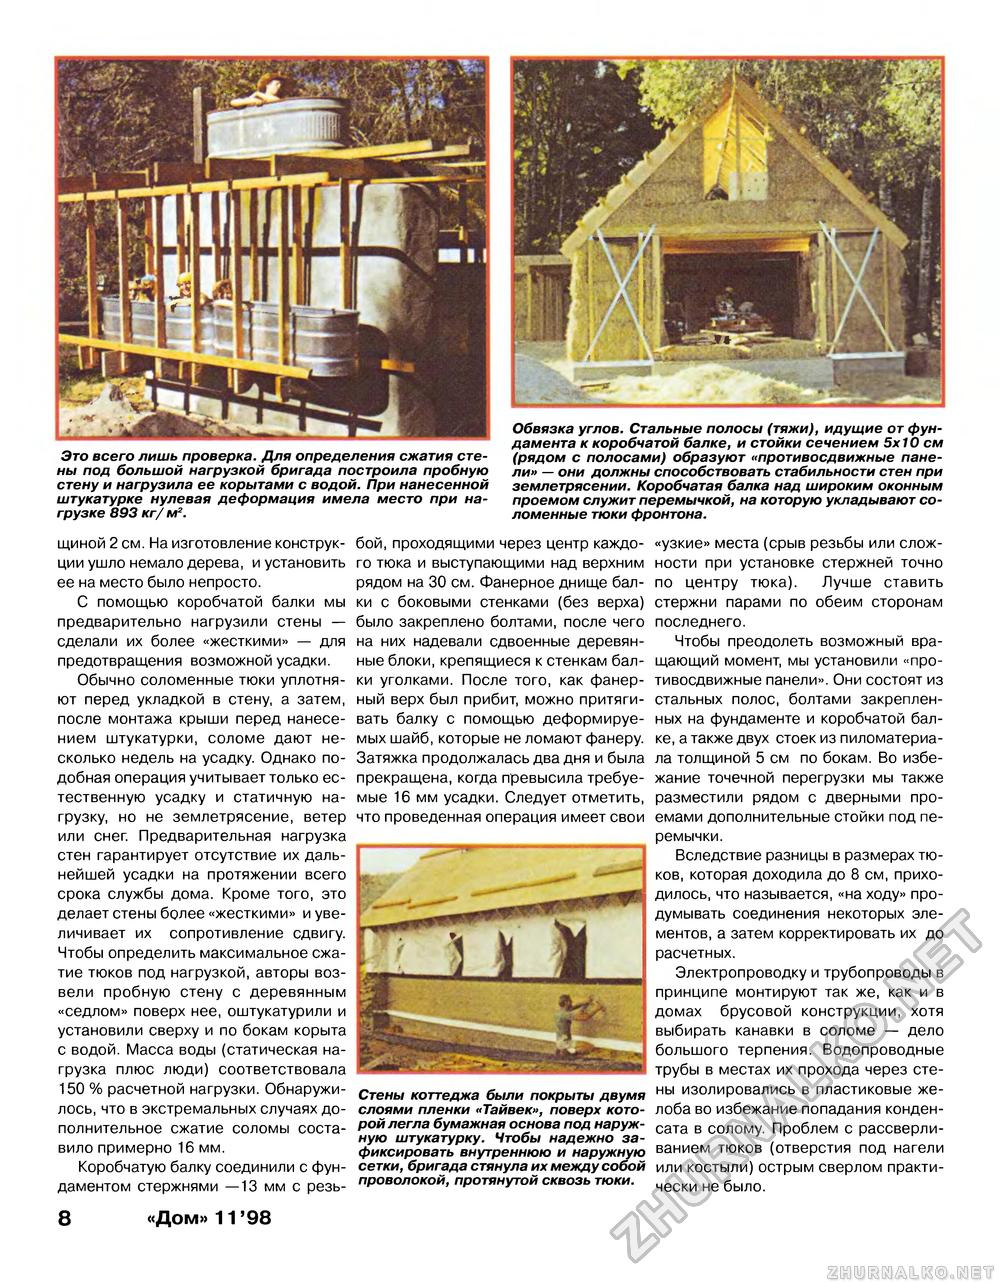 Дом 1998-11, страница 8